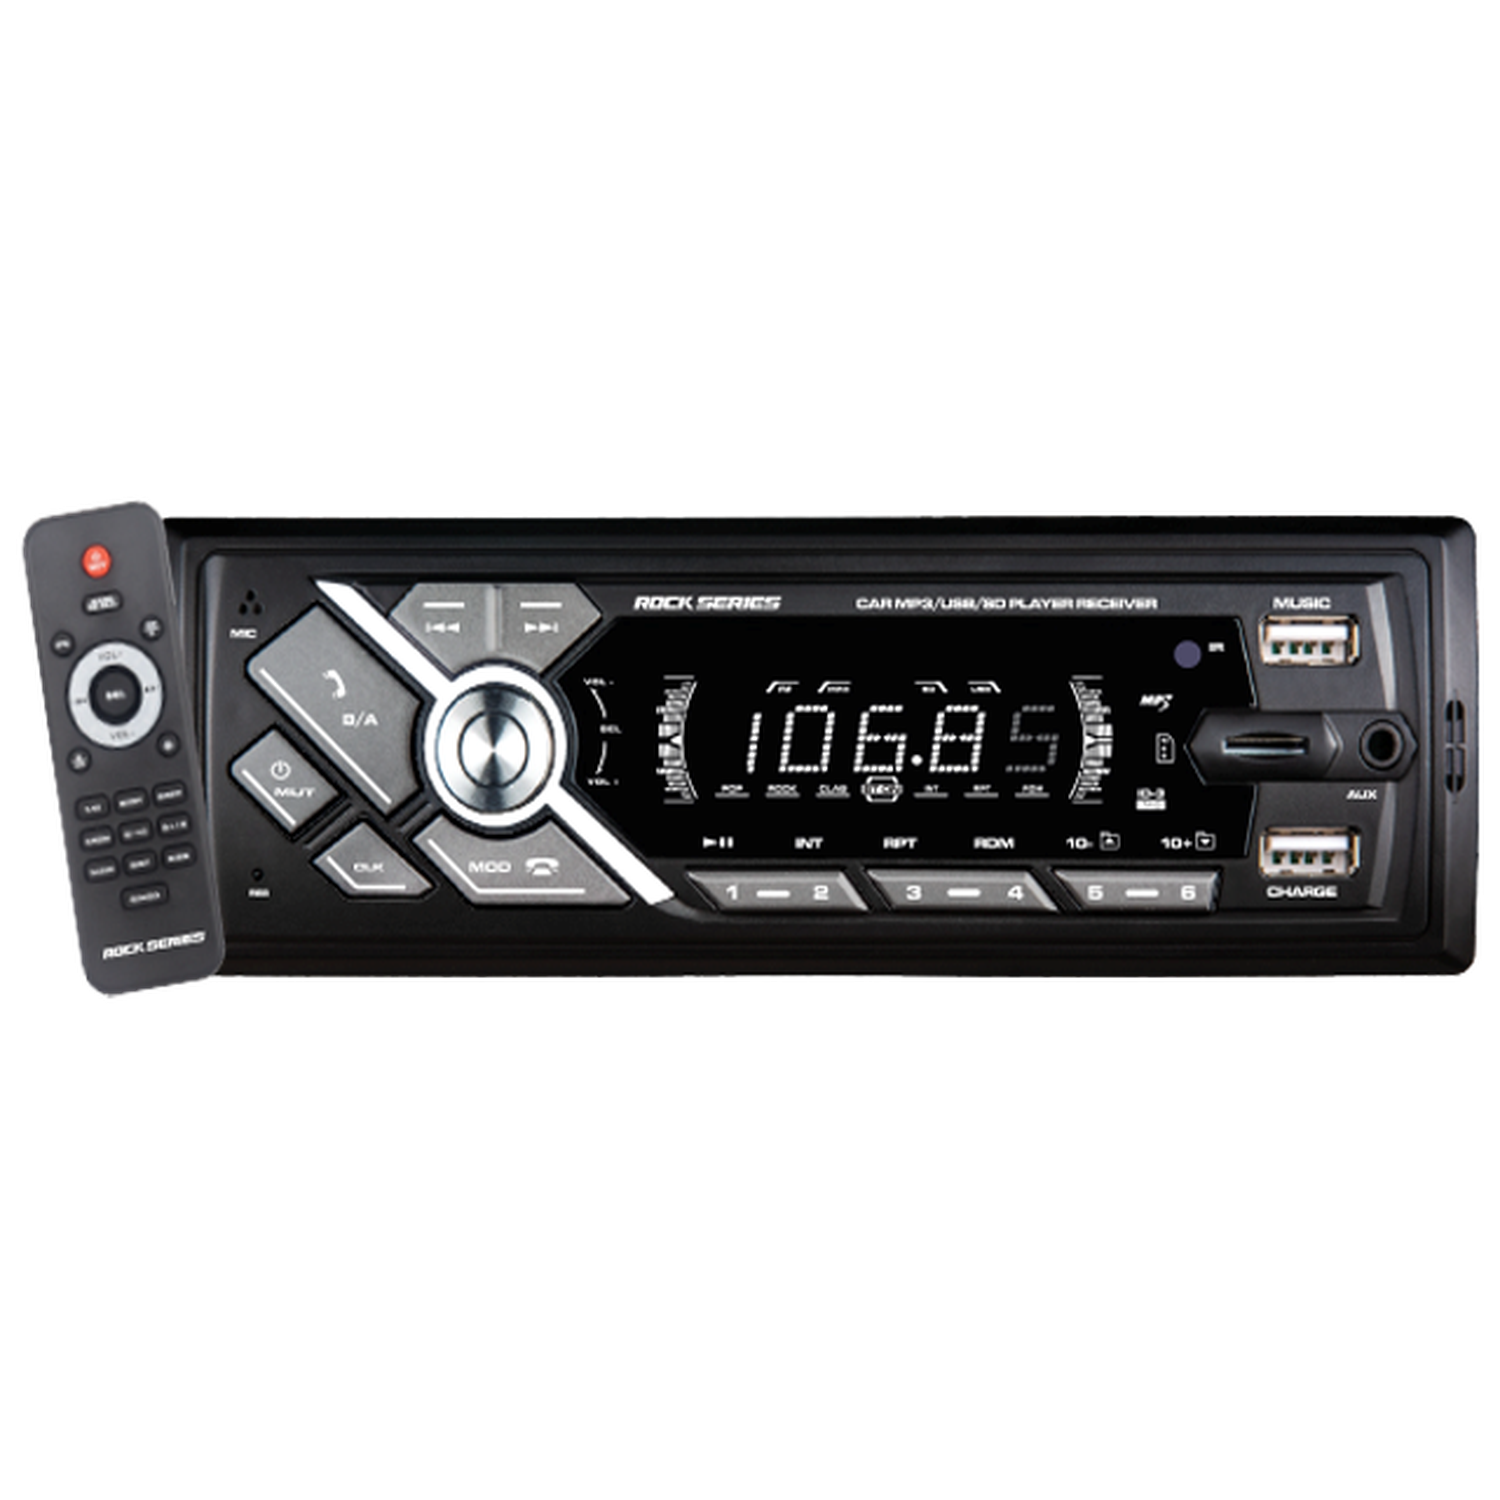 Estéreo 1 DIN Rock Series RKS-600BT 2 Puertos USB AUX MP3 Bluetooth Panel fijo con Control remoto - Audioshop México lo mejor en Car Audio en México -  Rock Series